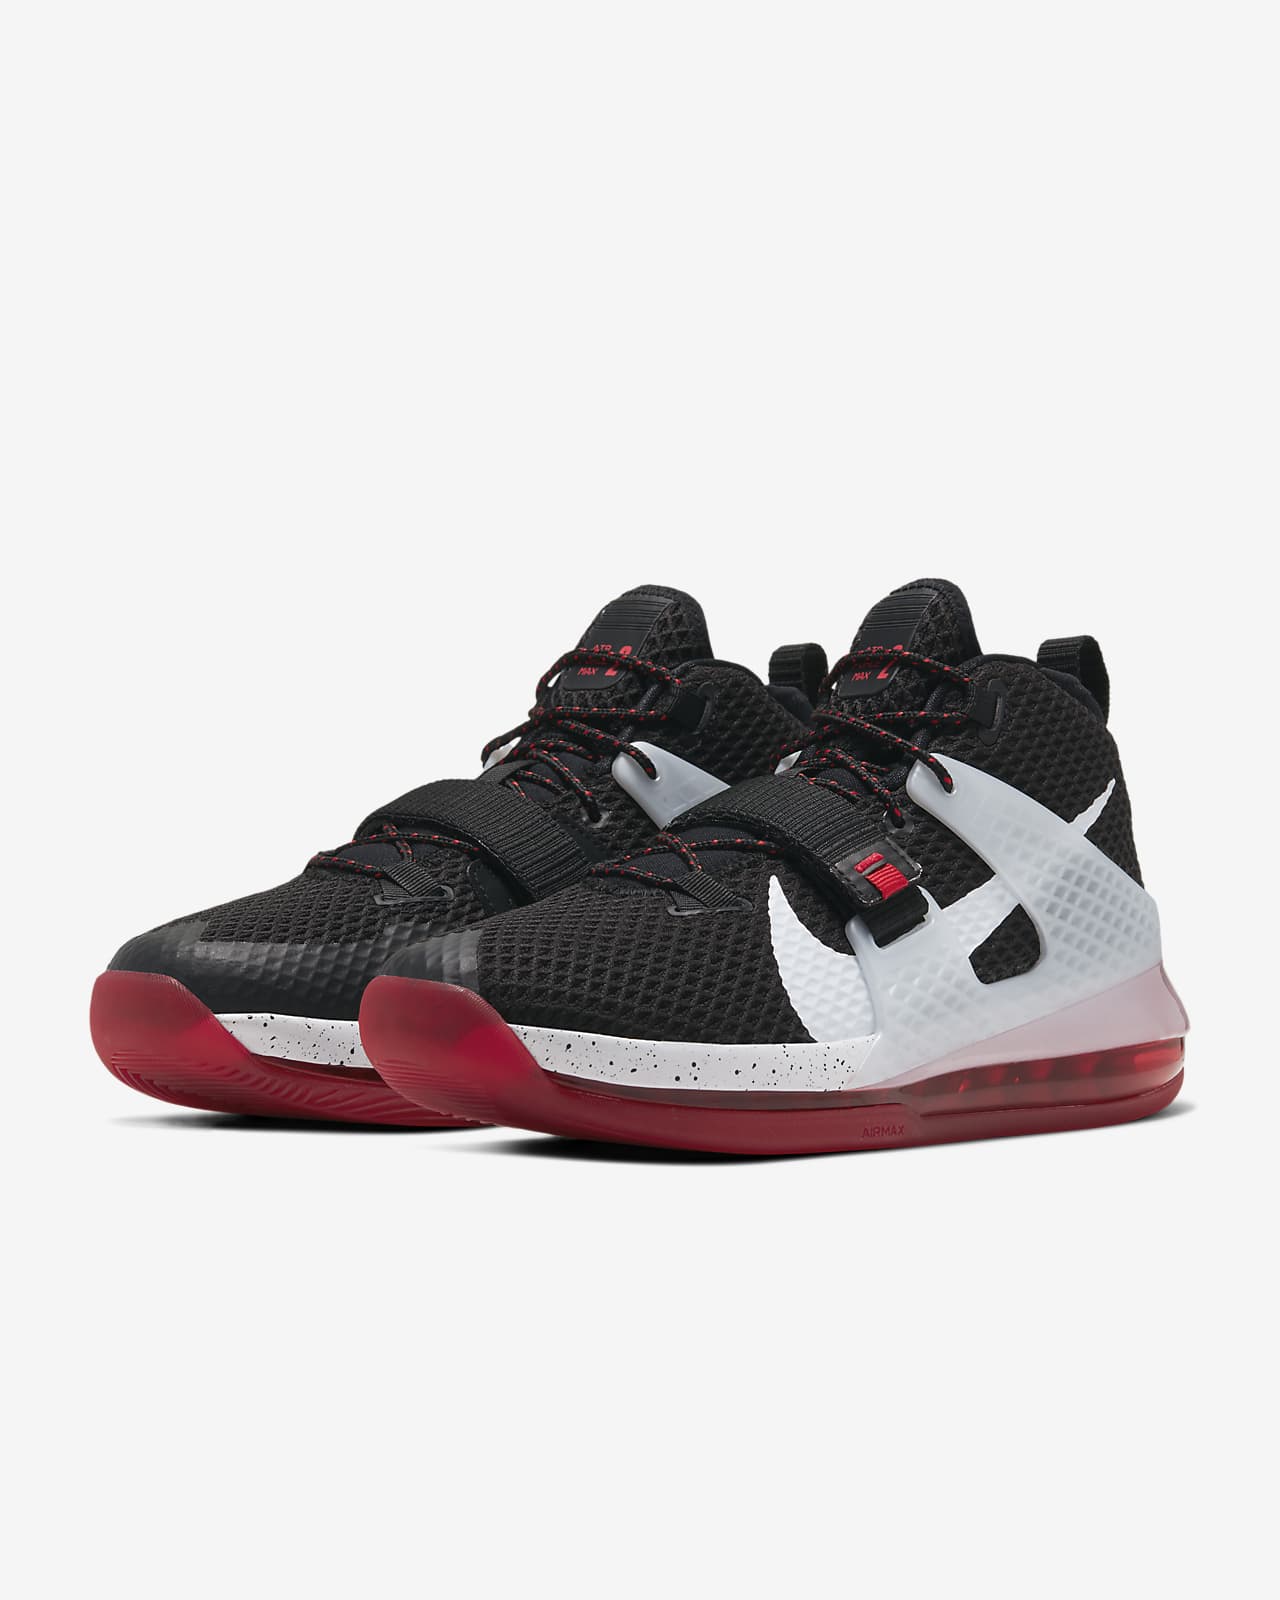 Air Jordan Basketball Shoe Nike Air Force Max II men's shoes